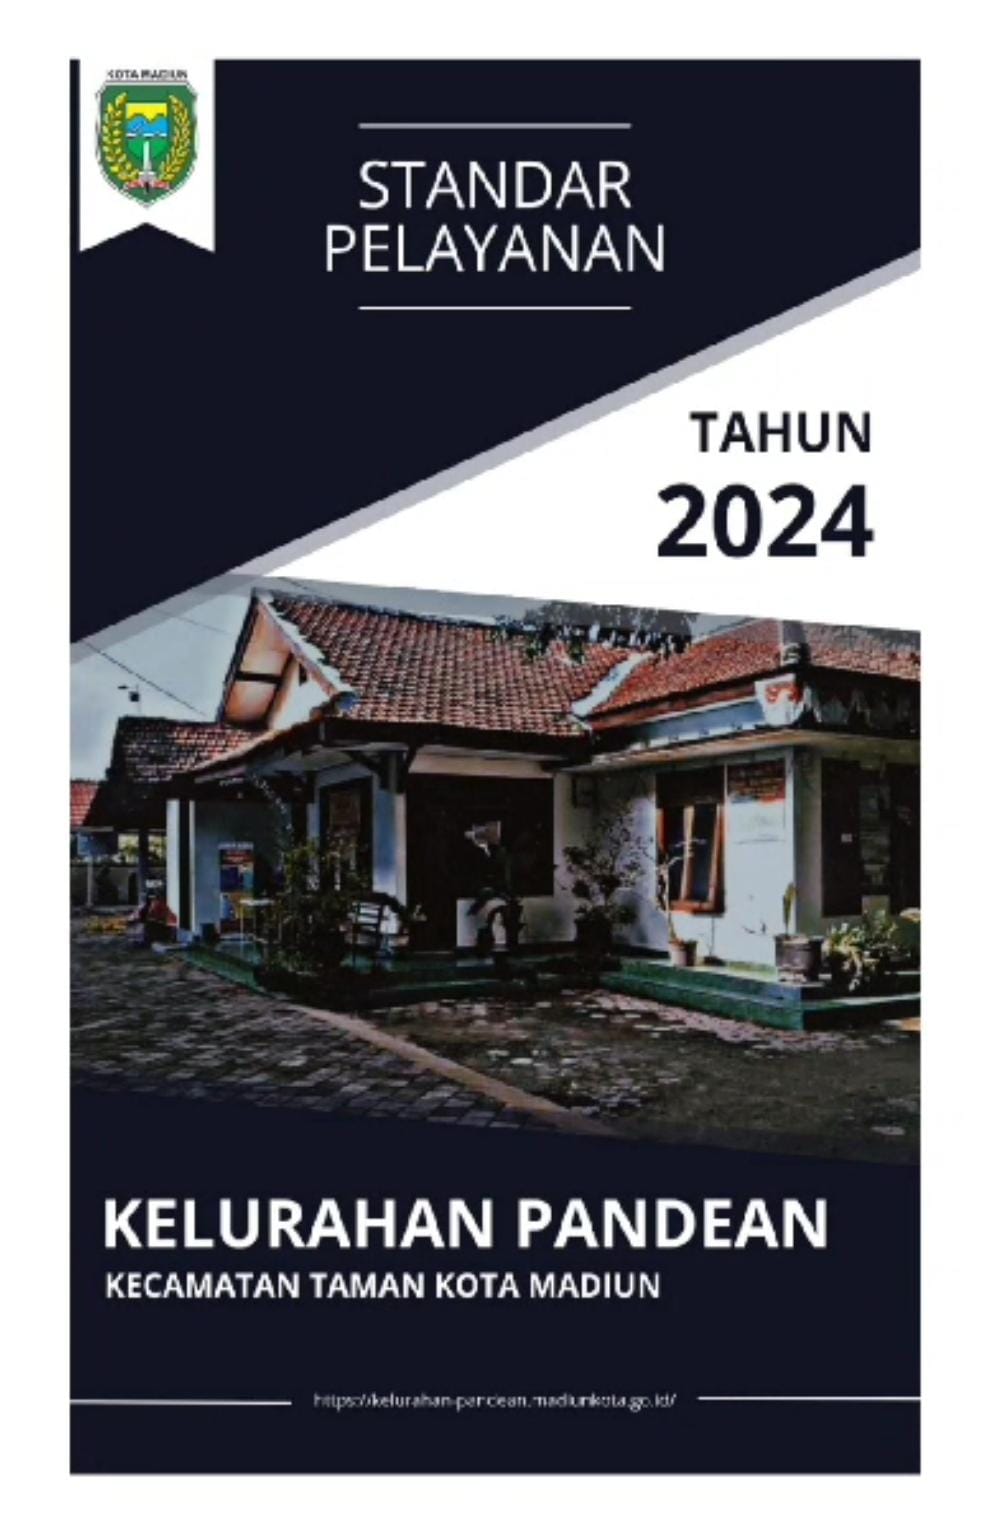 SP TERBARU KELURAHAN PANDEAN TAHUN 2024